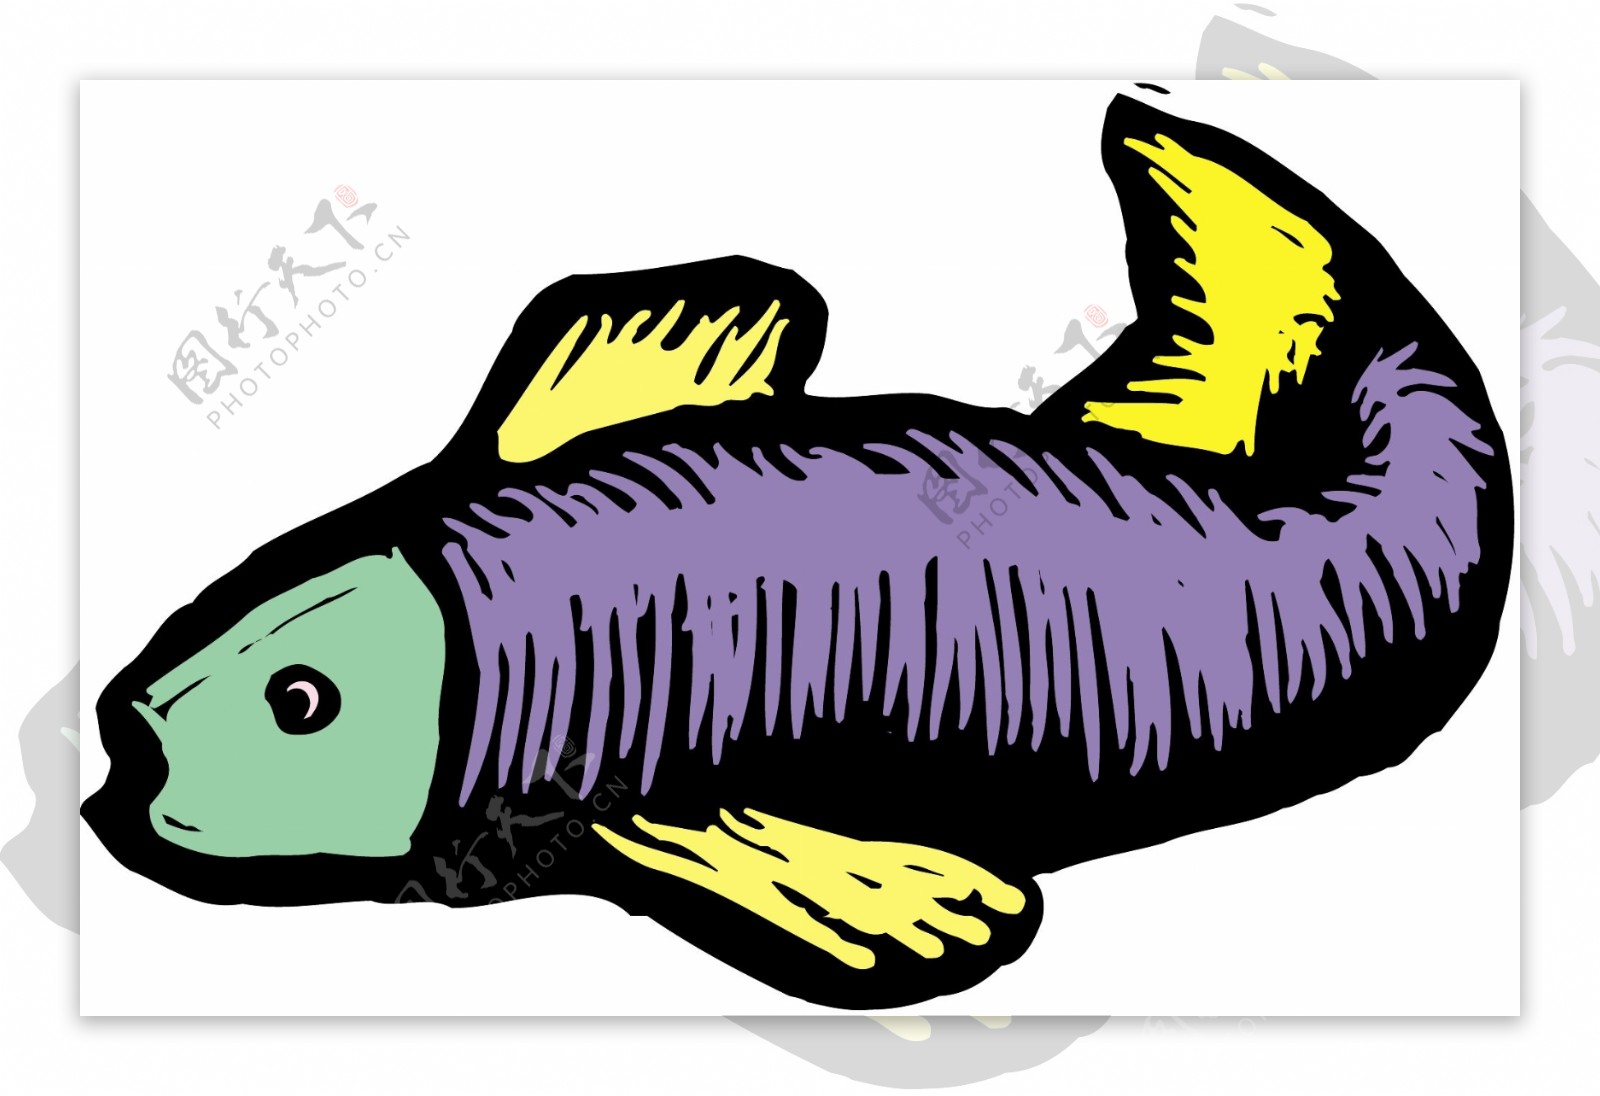 五彩小鱼水生动物矢量素材EPS格式0351